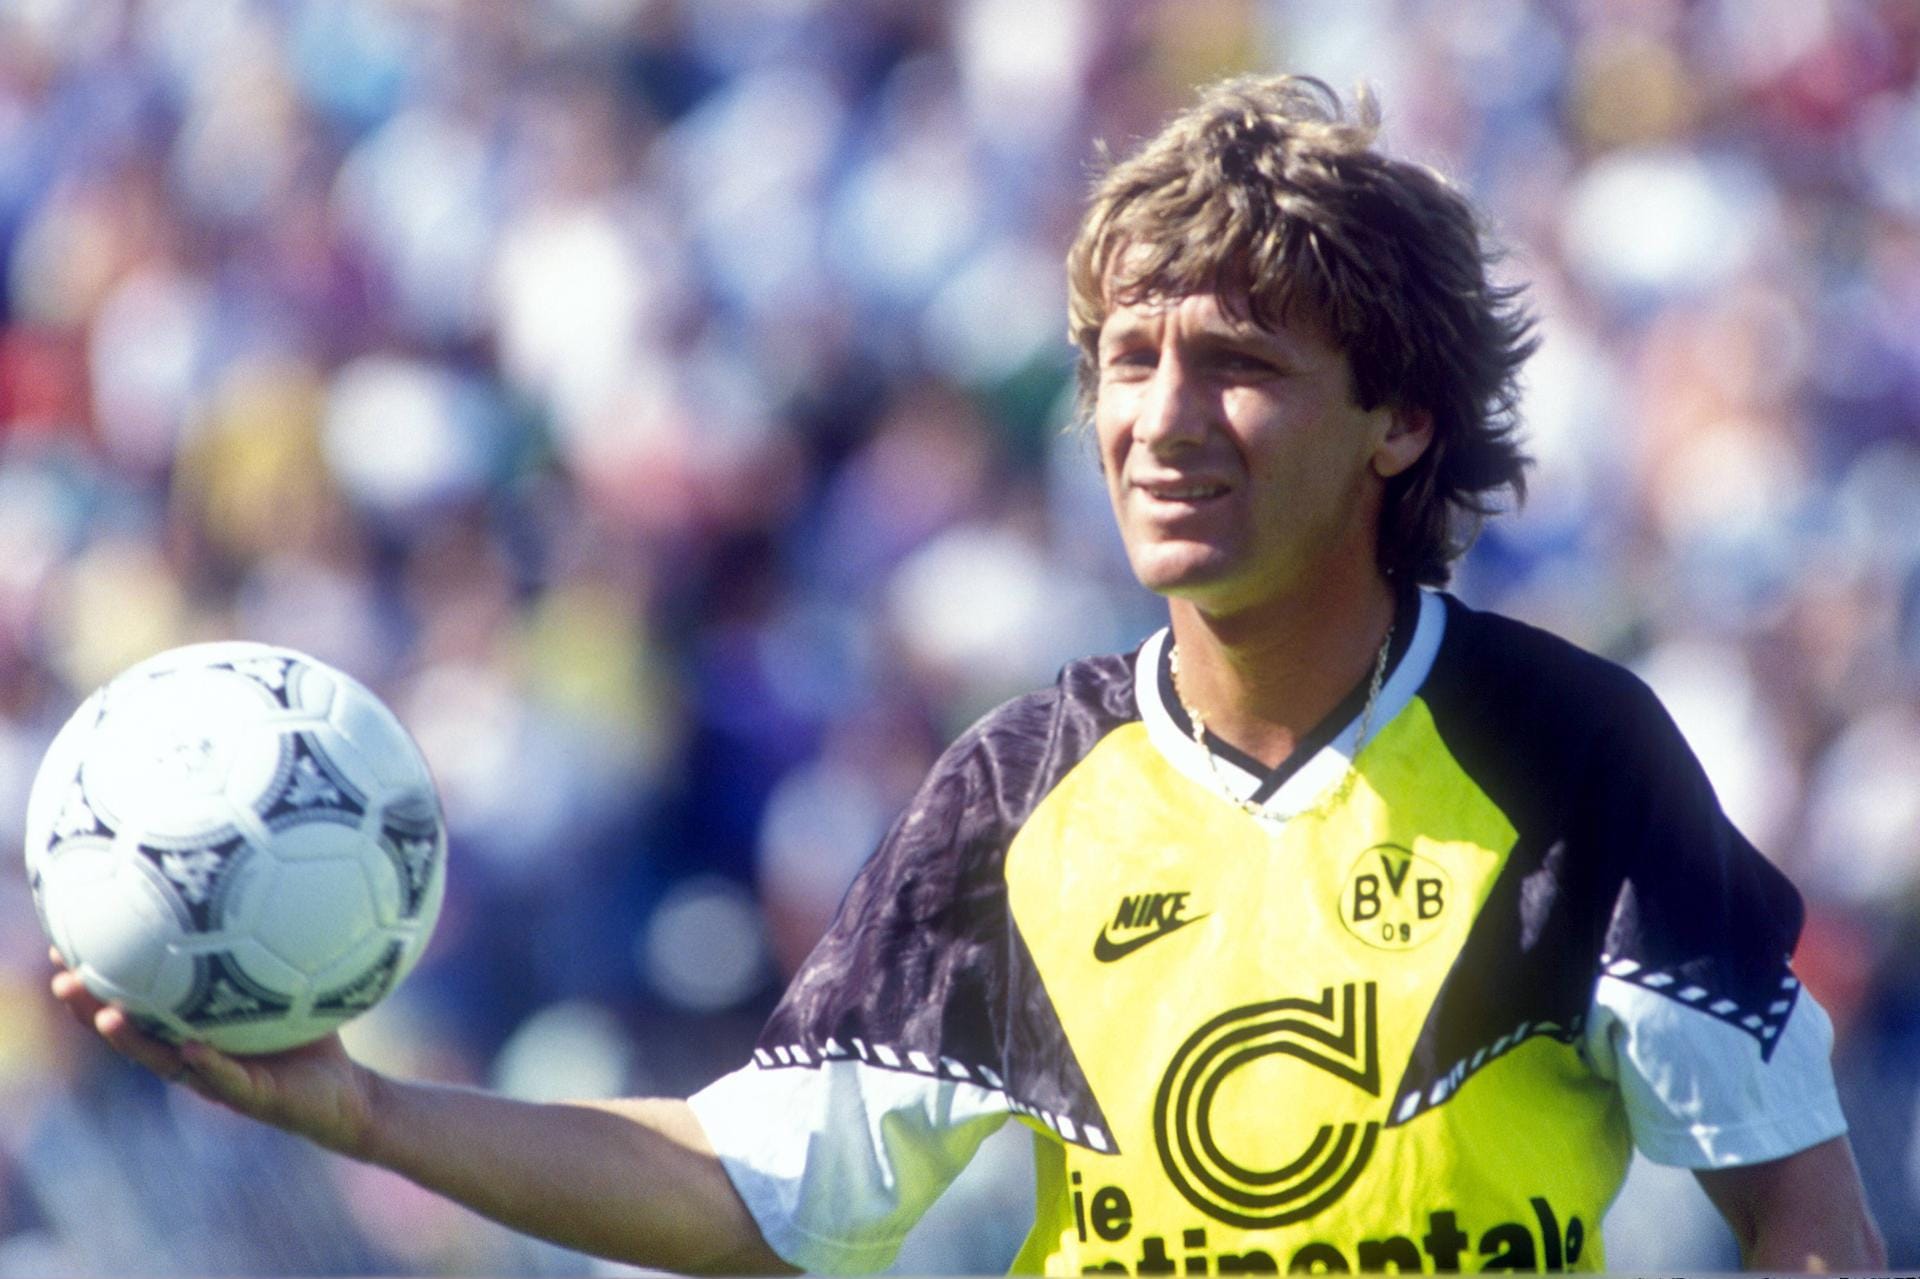 Frank Mill (1986-1994): Der gebürtige Essener gewann mit dem BVB 1989 den DFB-Pokal. Während seiner Zeit in Dortmund erzielte er 66 Tore. Heute ist Mill Unternehmer und betreibt eine Fußballschule mit bundesweit 75 Standorten.